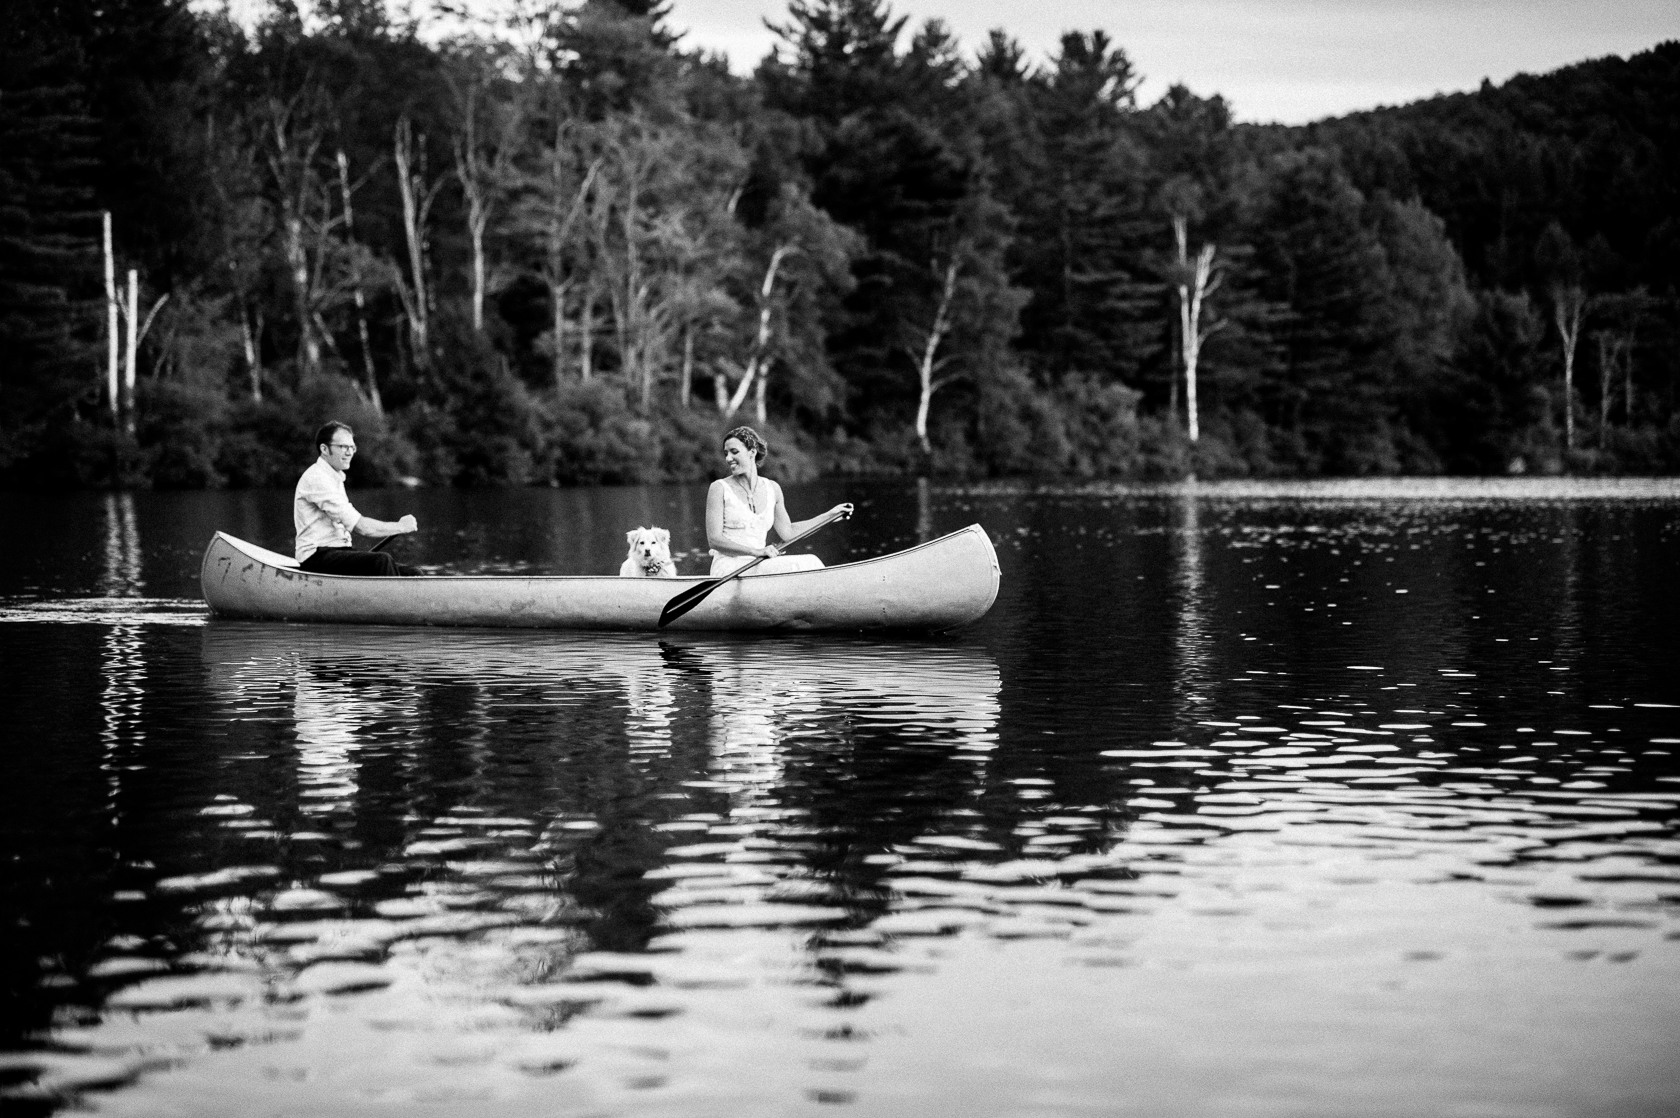 outdoor canoeing adventure summer camp wedding 